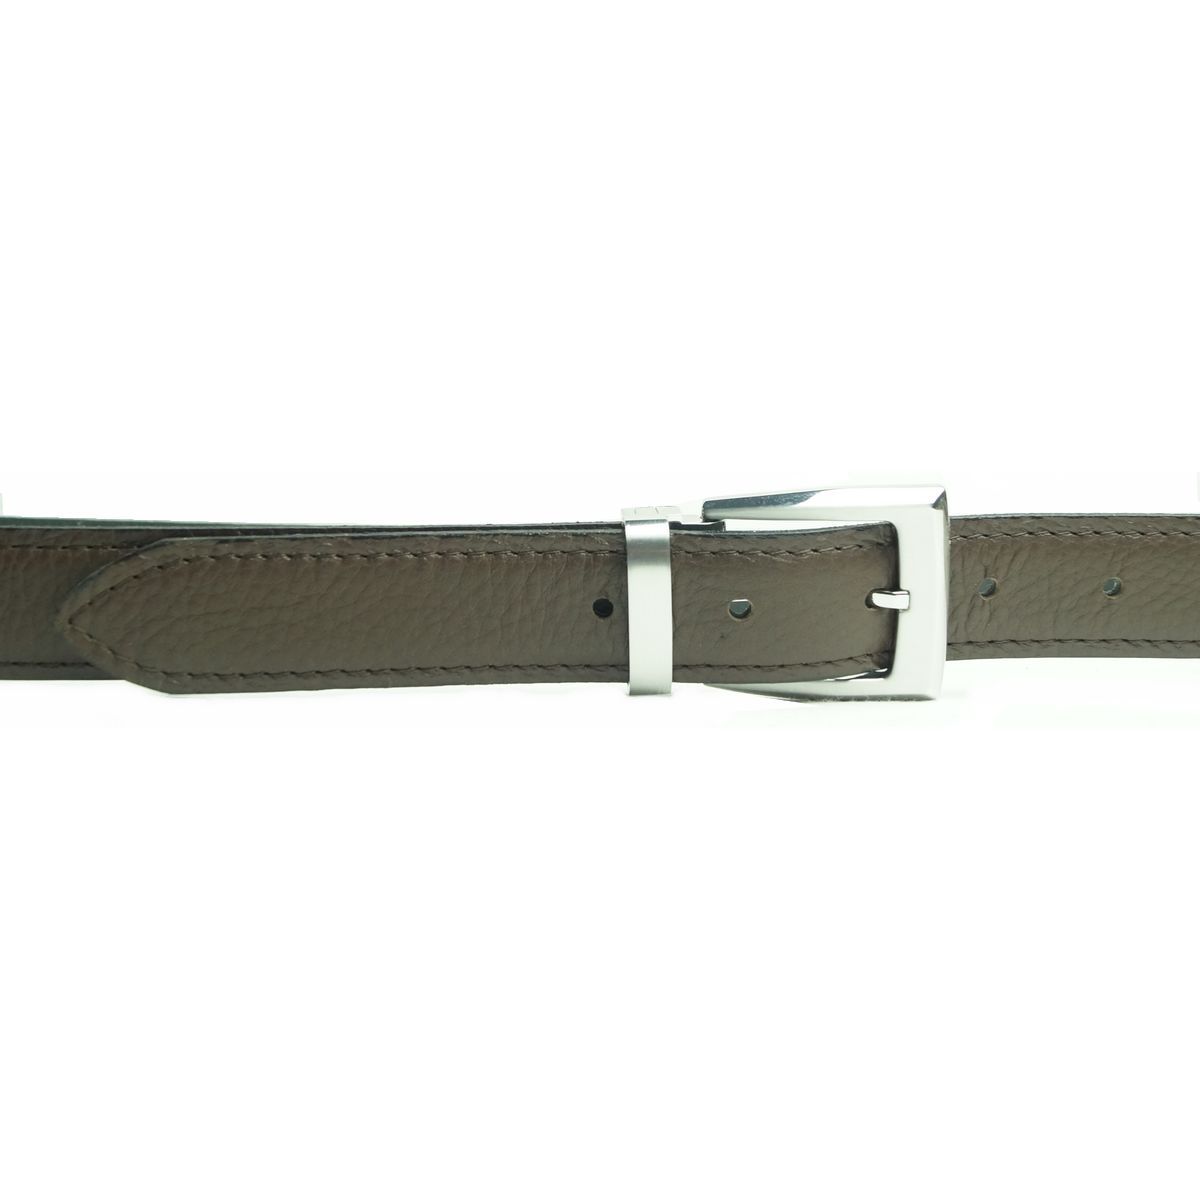 Læder Bælte - Tommy - Mørkebrunt - Bælte fra The Leather Belt Co. hos The Prince Webshop